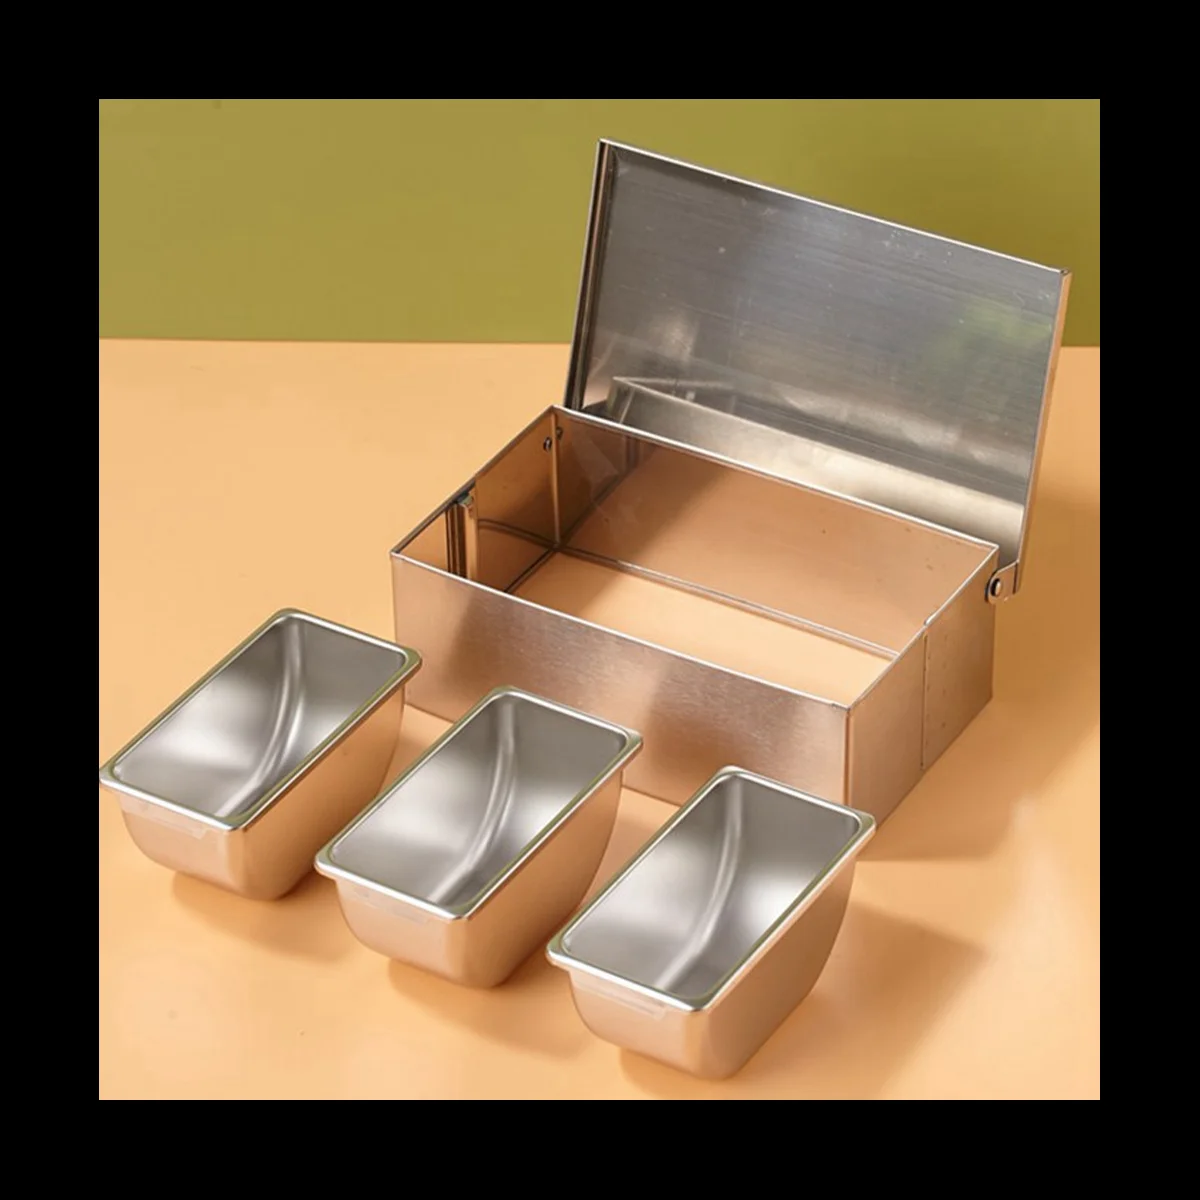 

4 Section Seasoning Box Stainless Steel Ingredients Box Cheese Sauce Salt Sugar Box Spice Jar Baking Tool